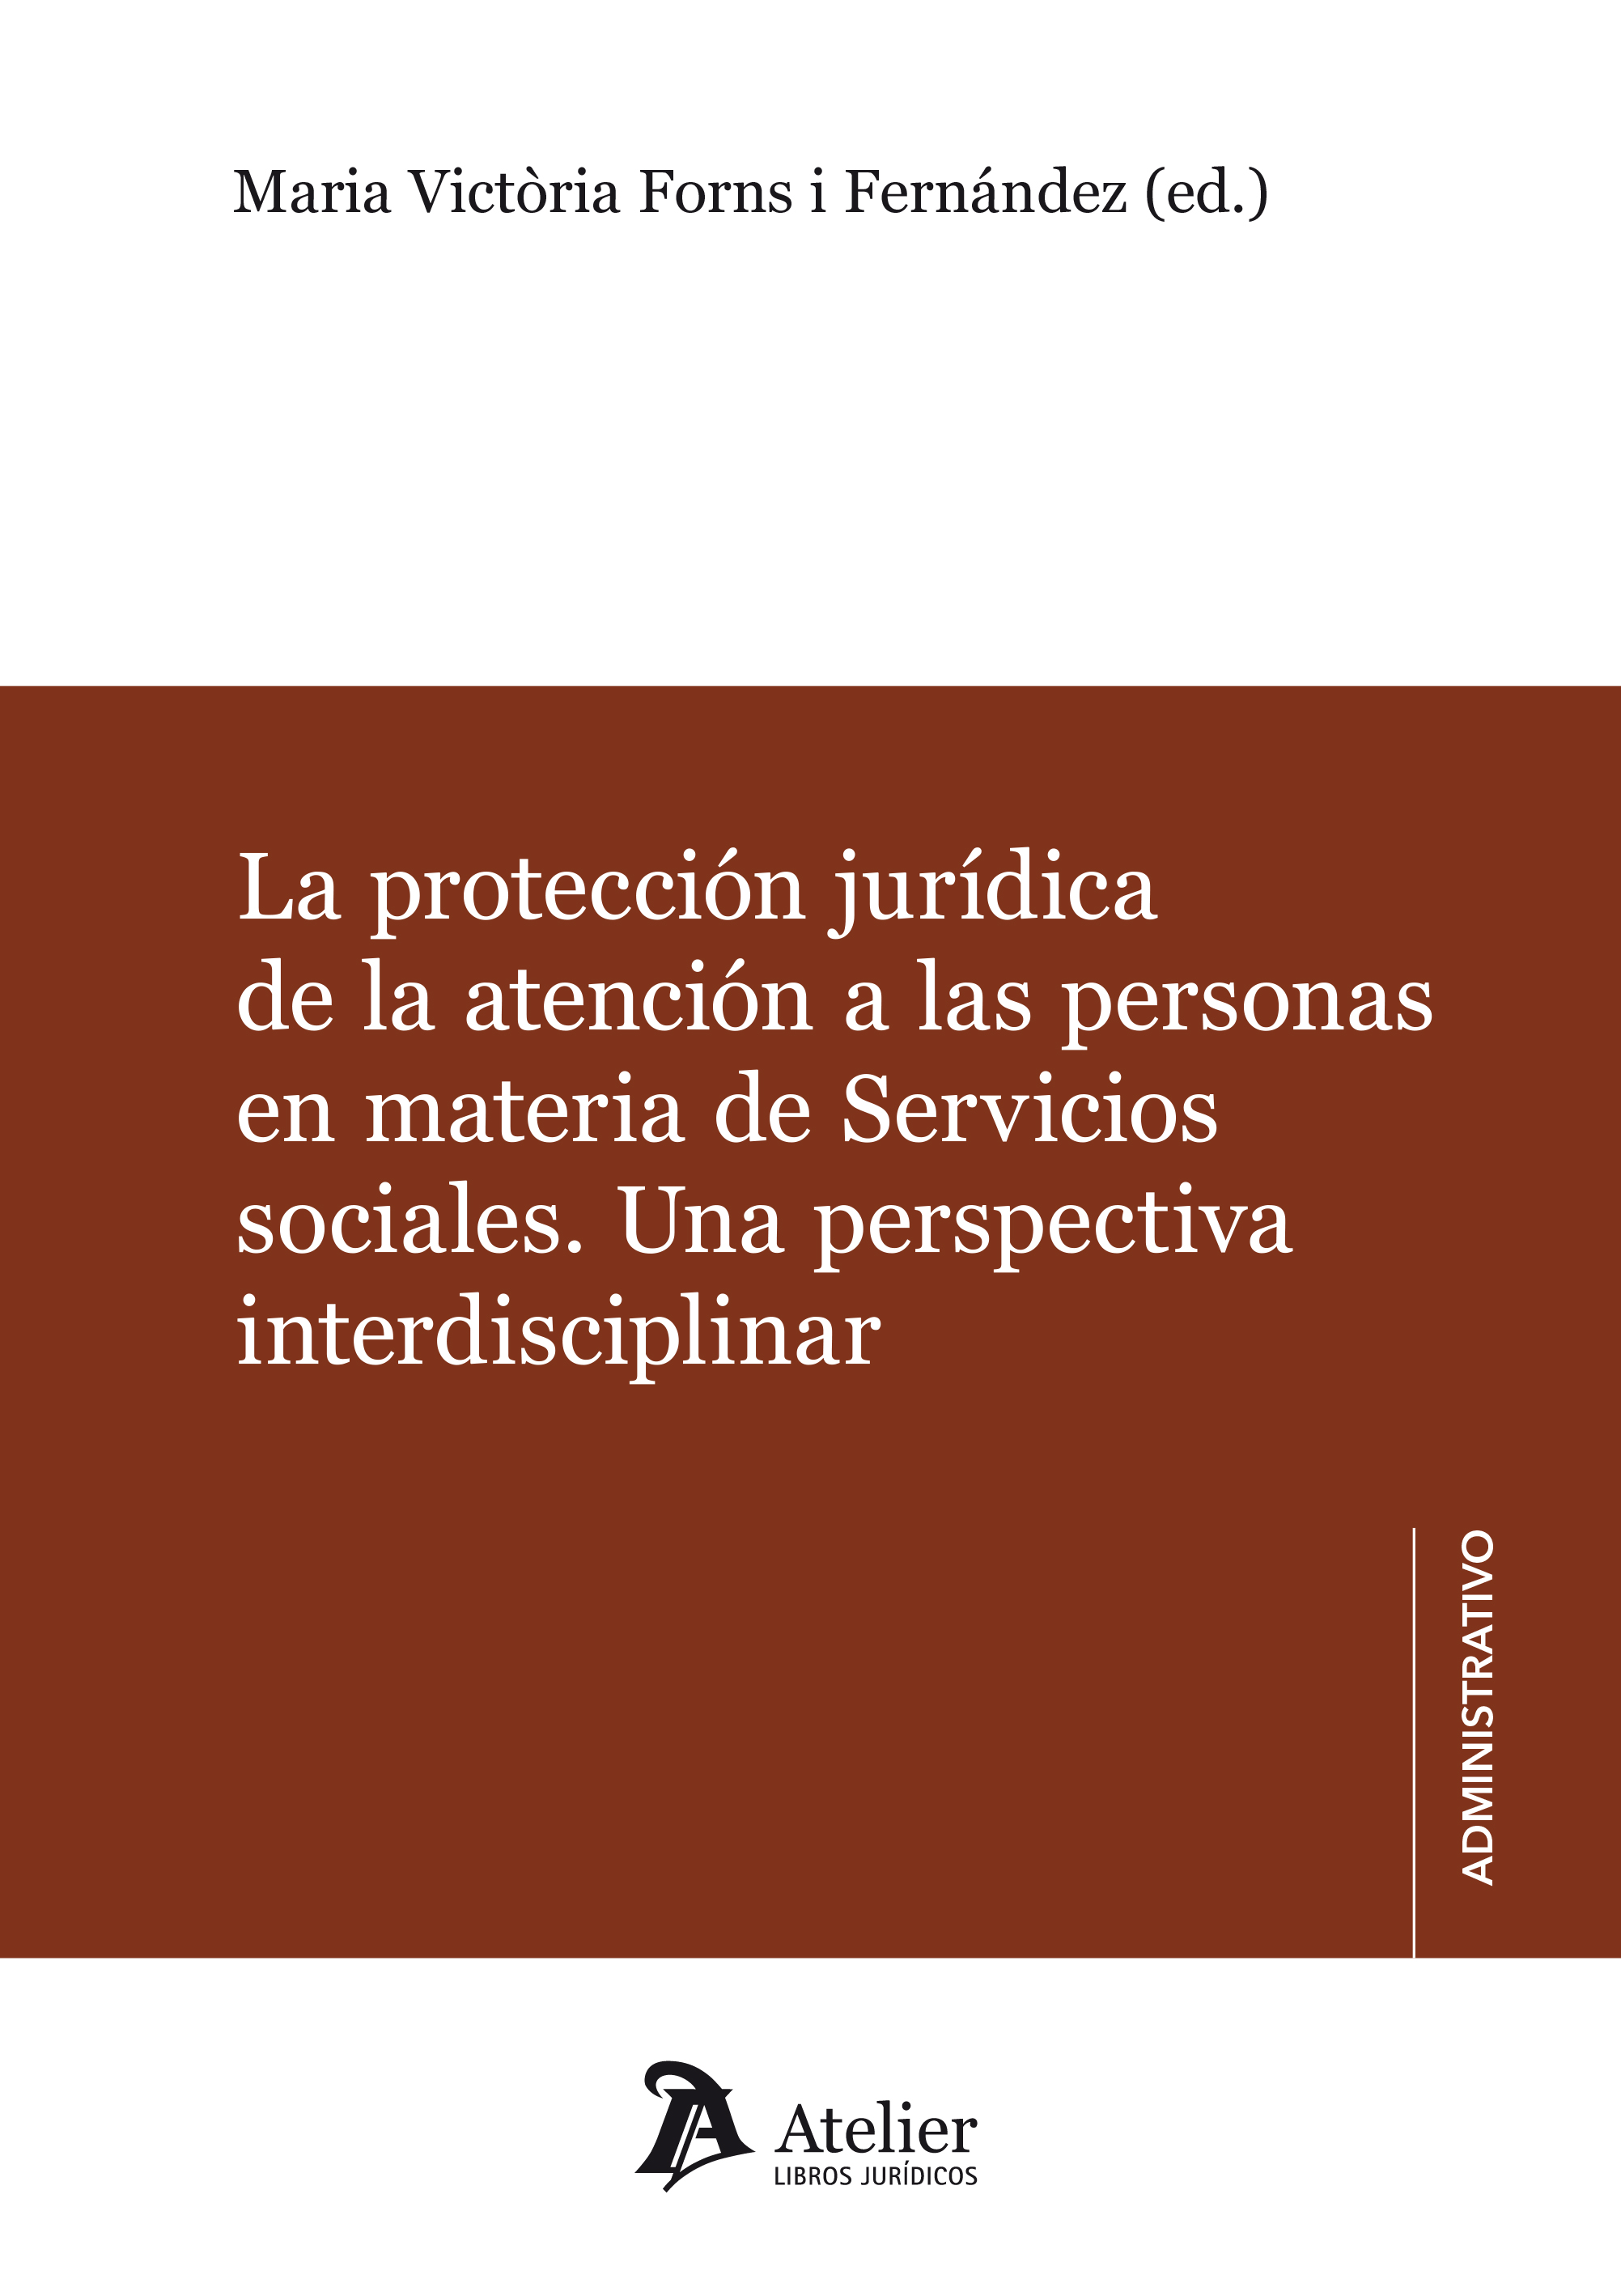 La_proteccion_juridica_atencion_personas_COB